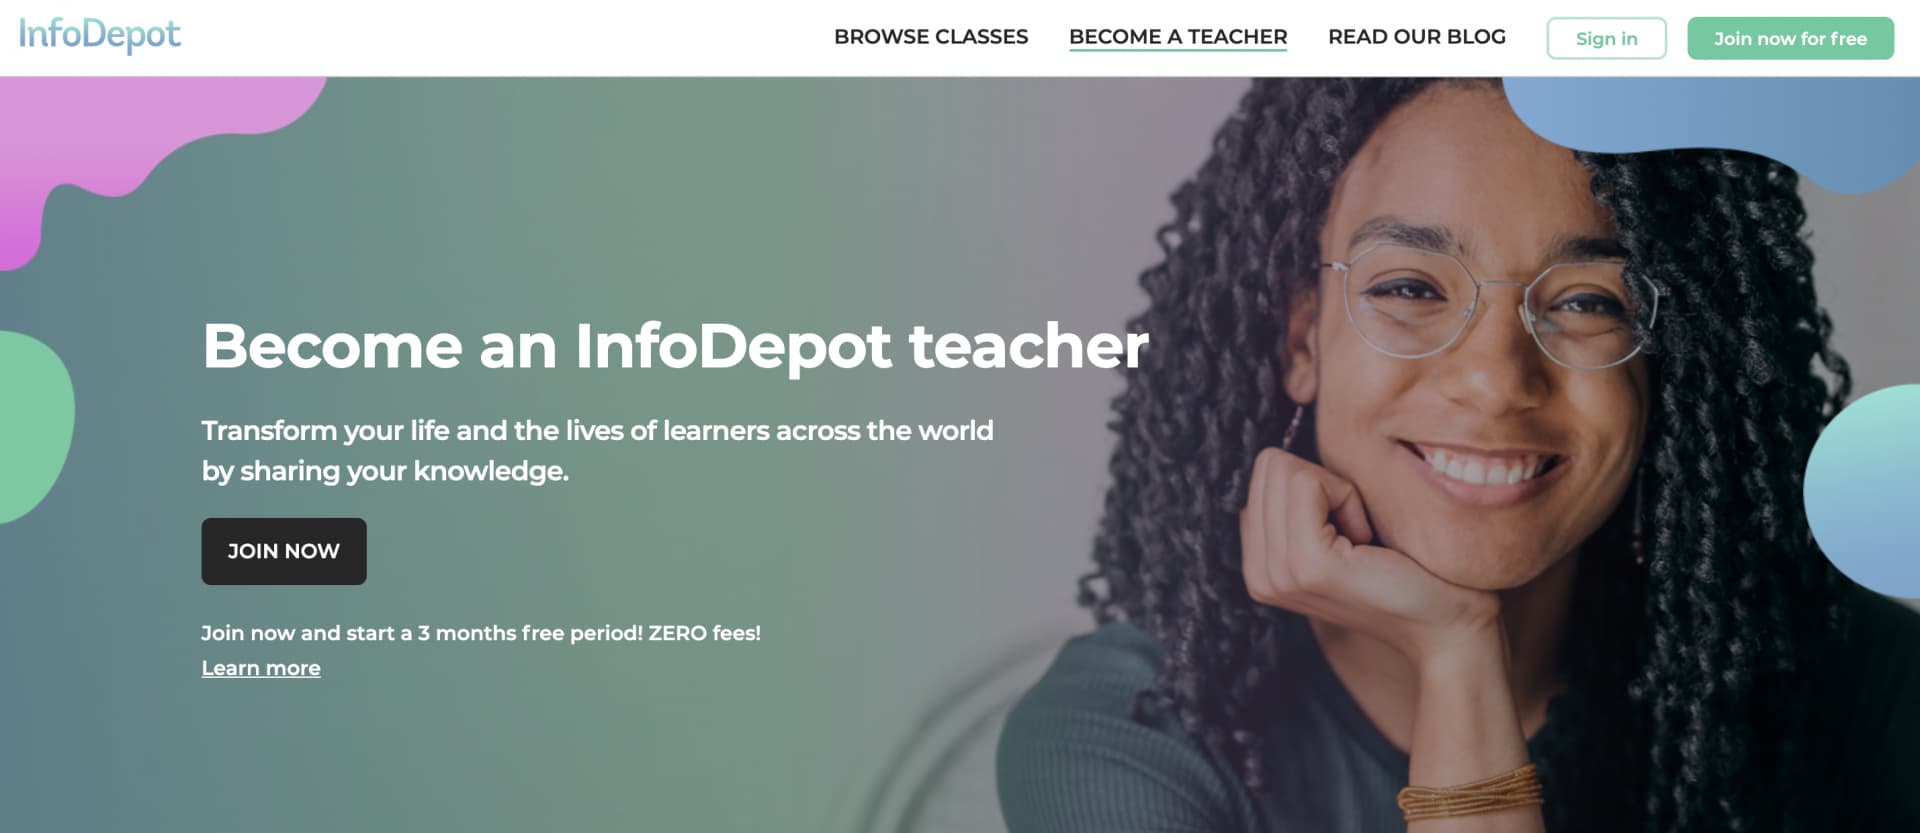 InfoDepot Become a teacher landing page